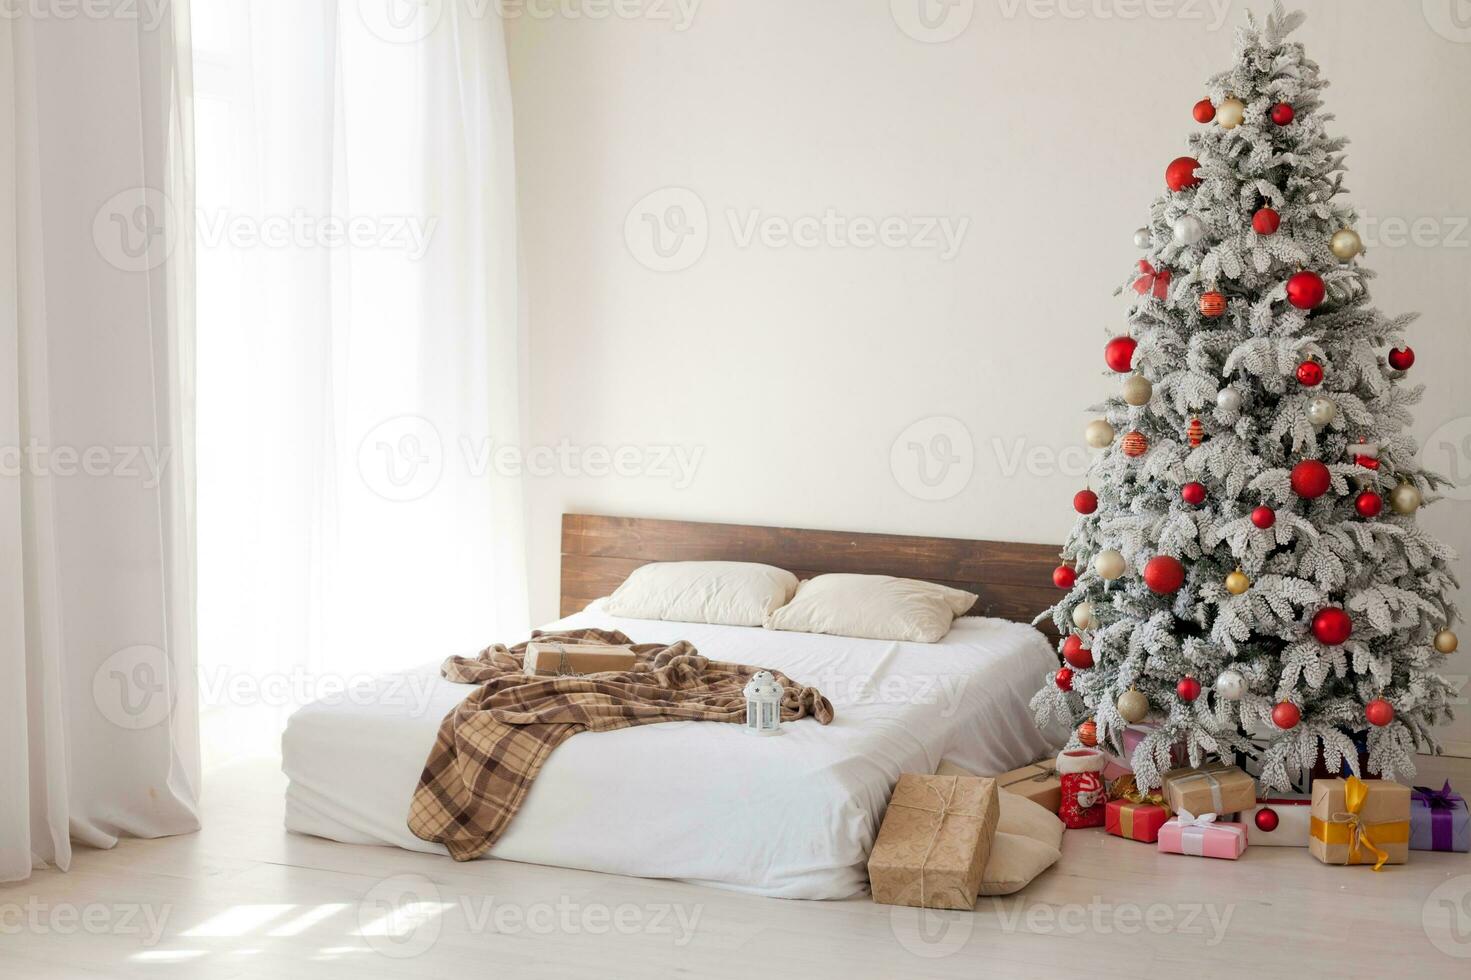 Natal interior estoque fotos. explorar caloroso e convidativo feriado temático casa configurações, adornado com cintilante luzes, meias, e belas decorado Natal árvores foto